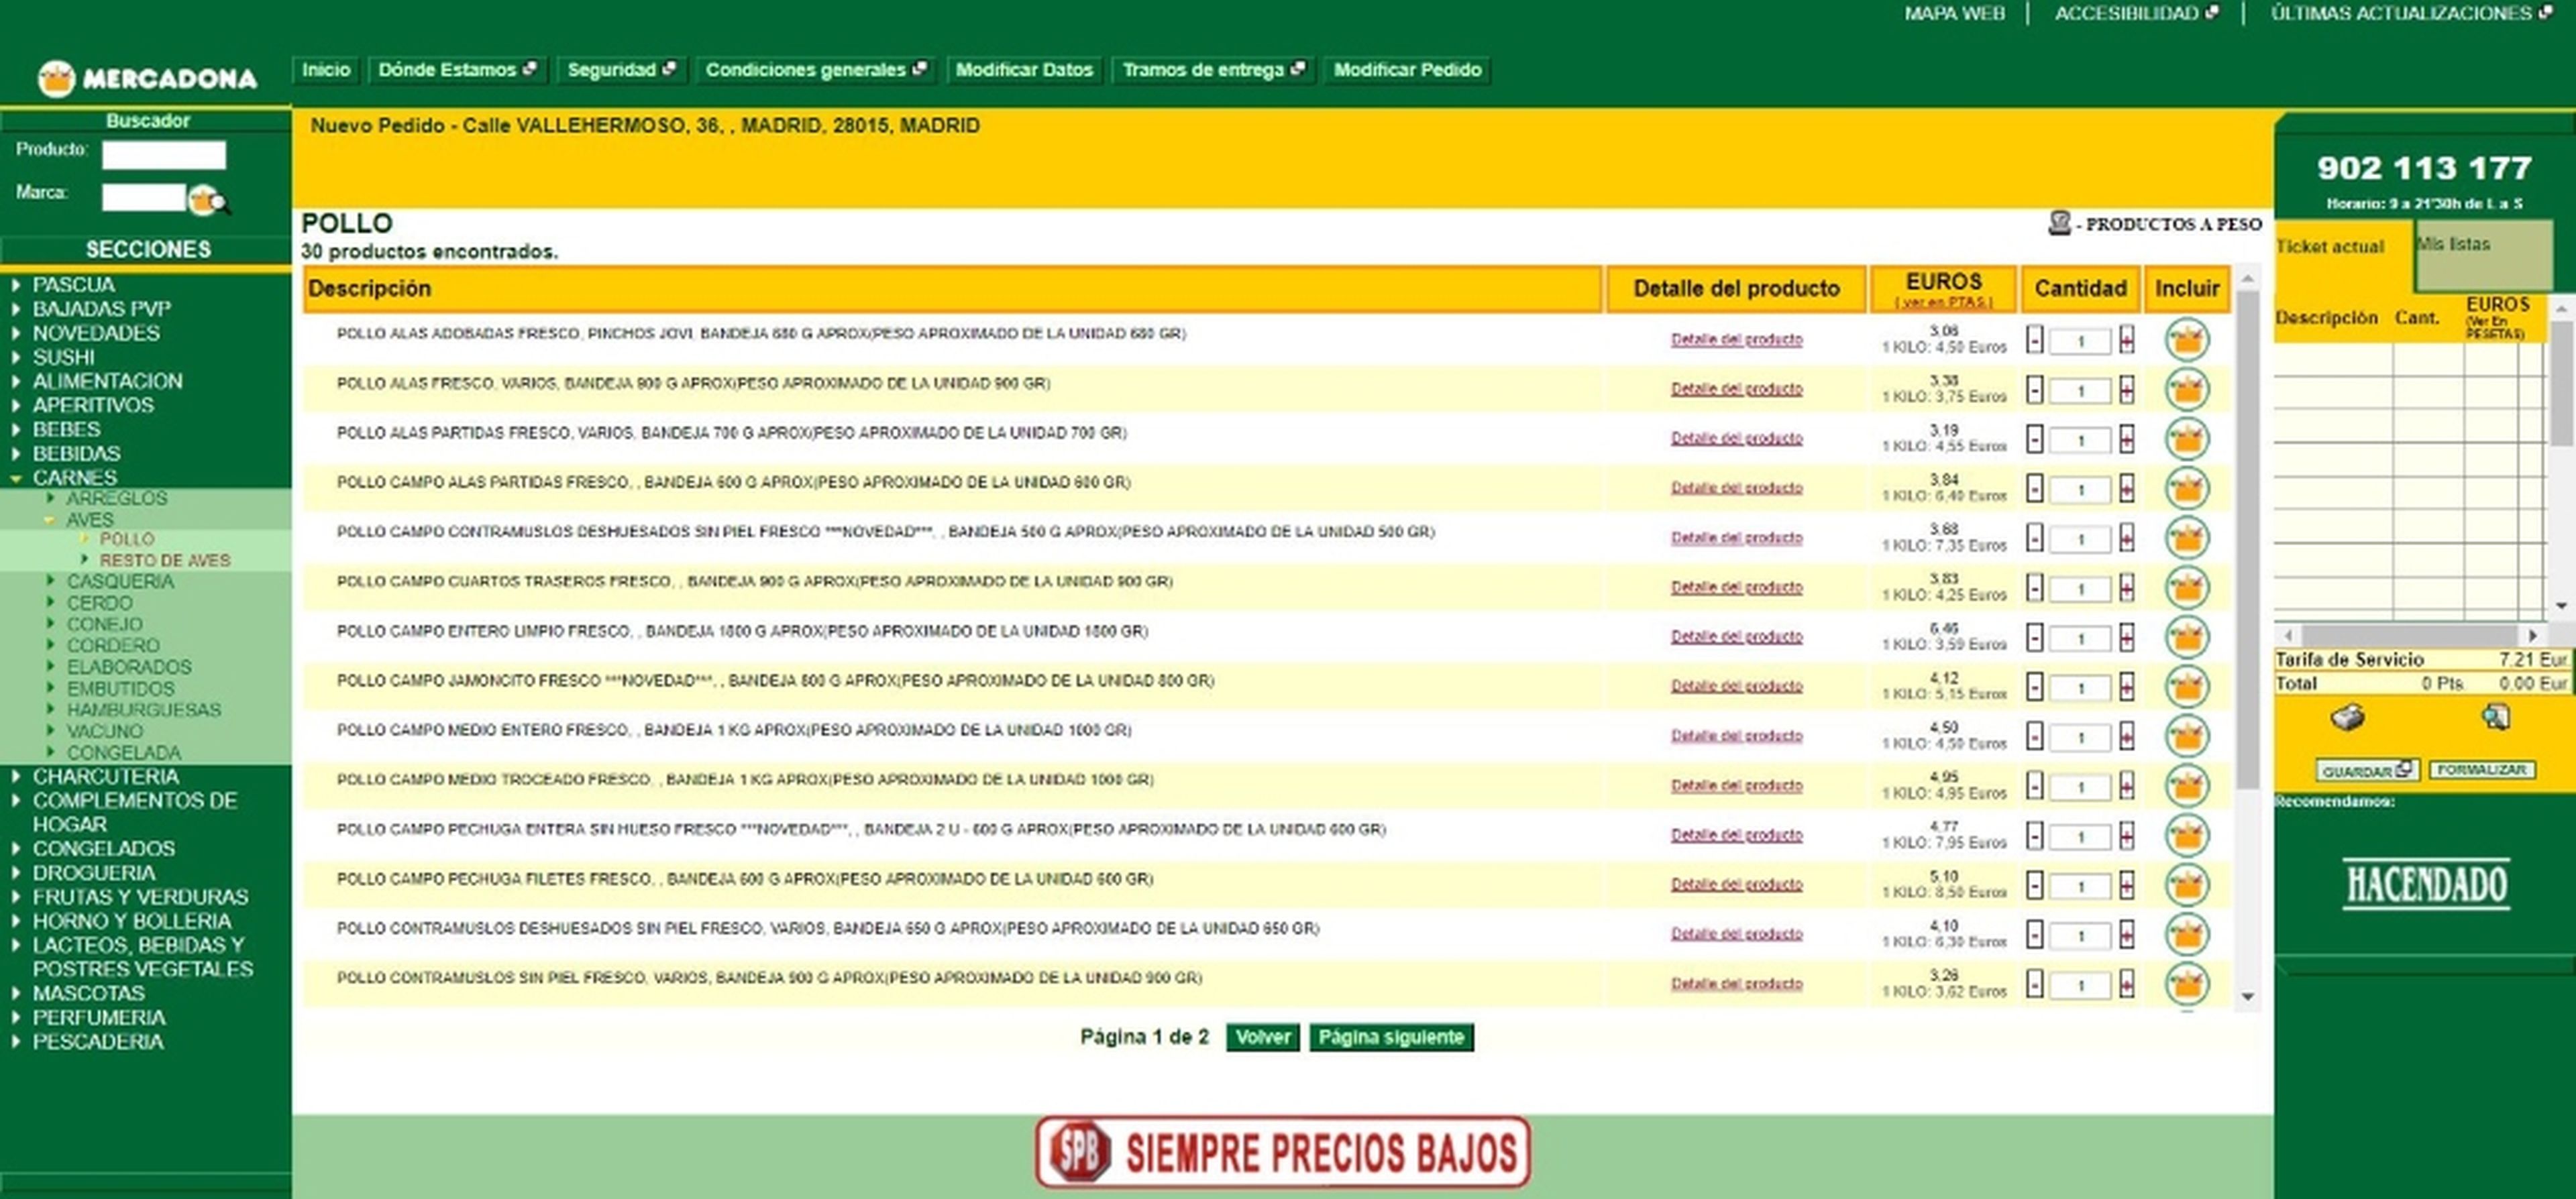 Captura de pantalla de la web de Mercadona.